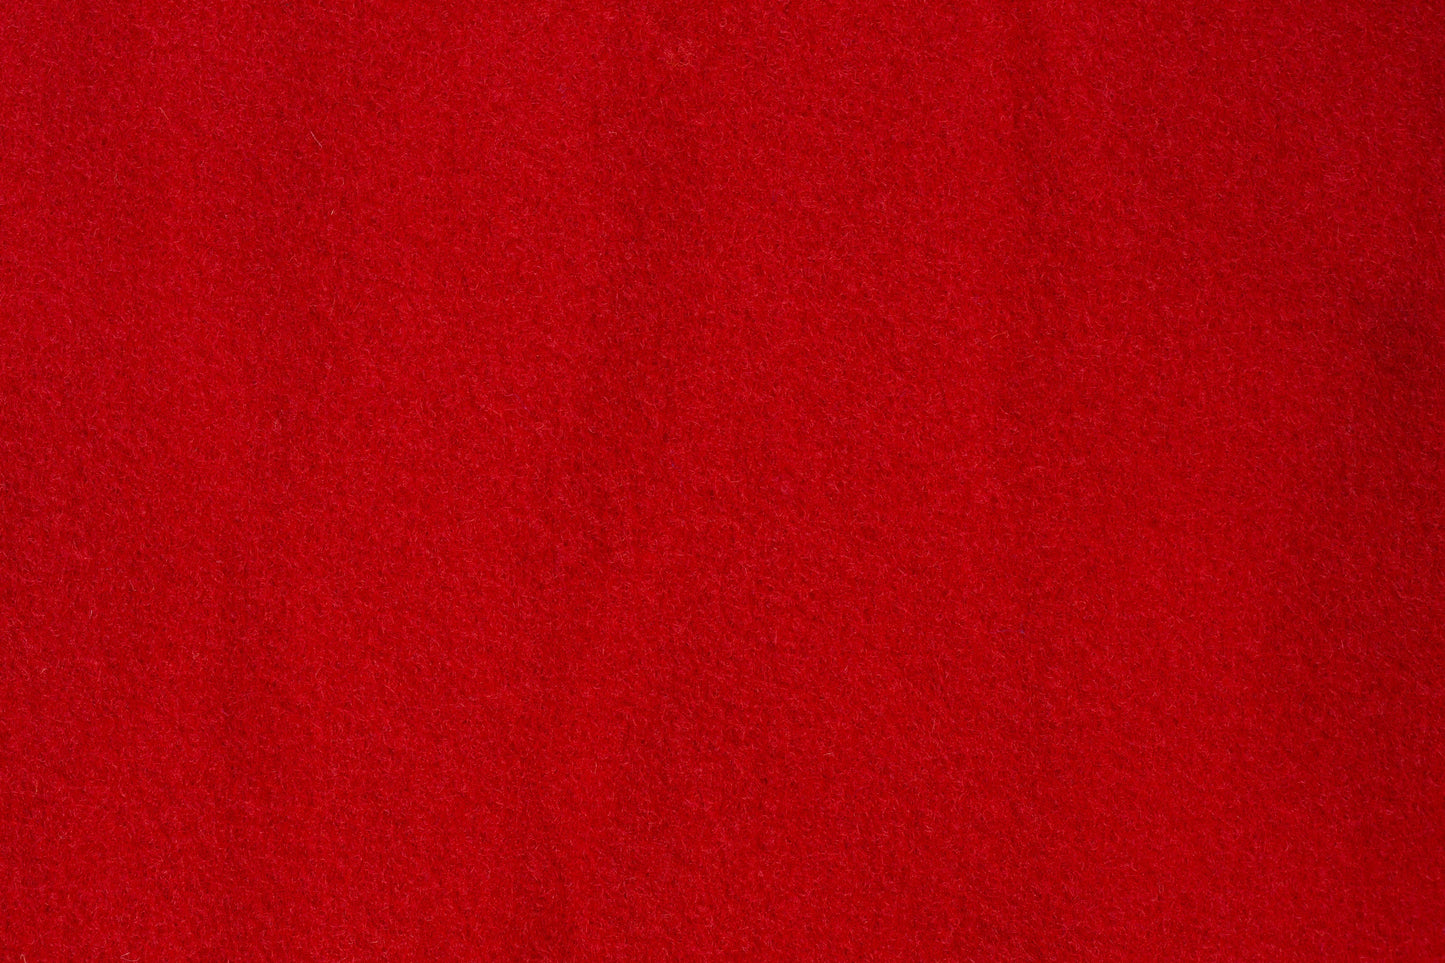 Red Self Adhesive Carpet Sample